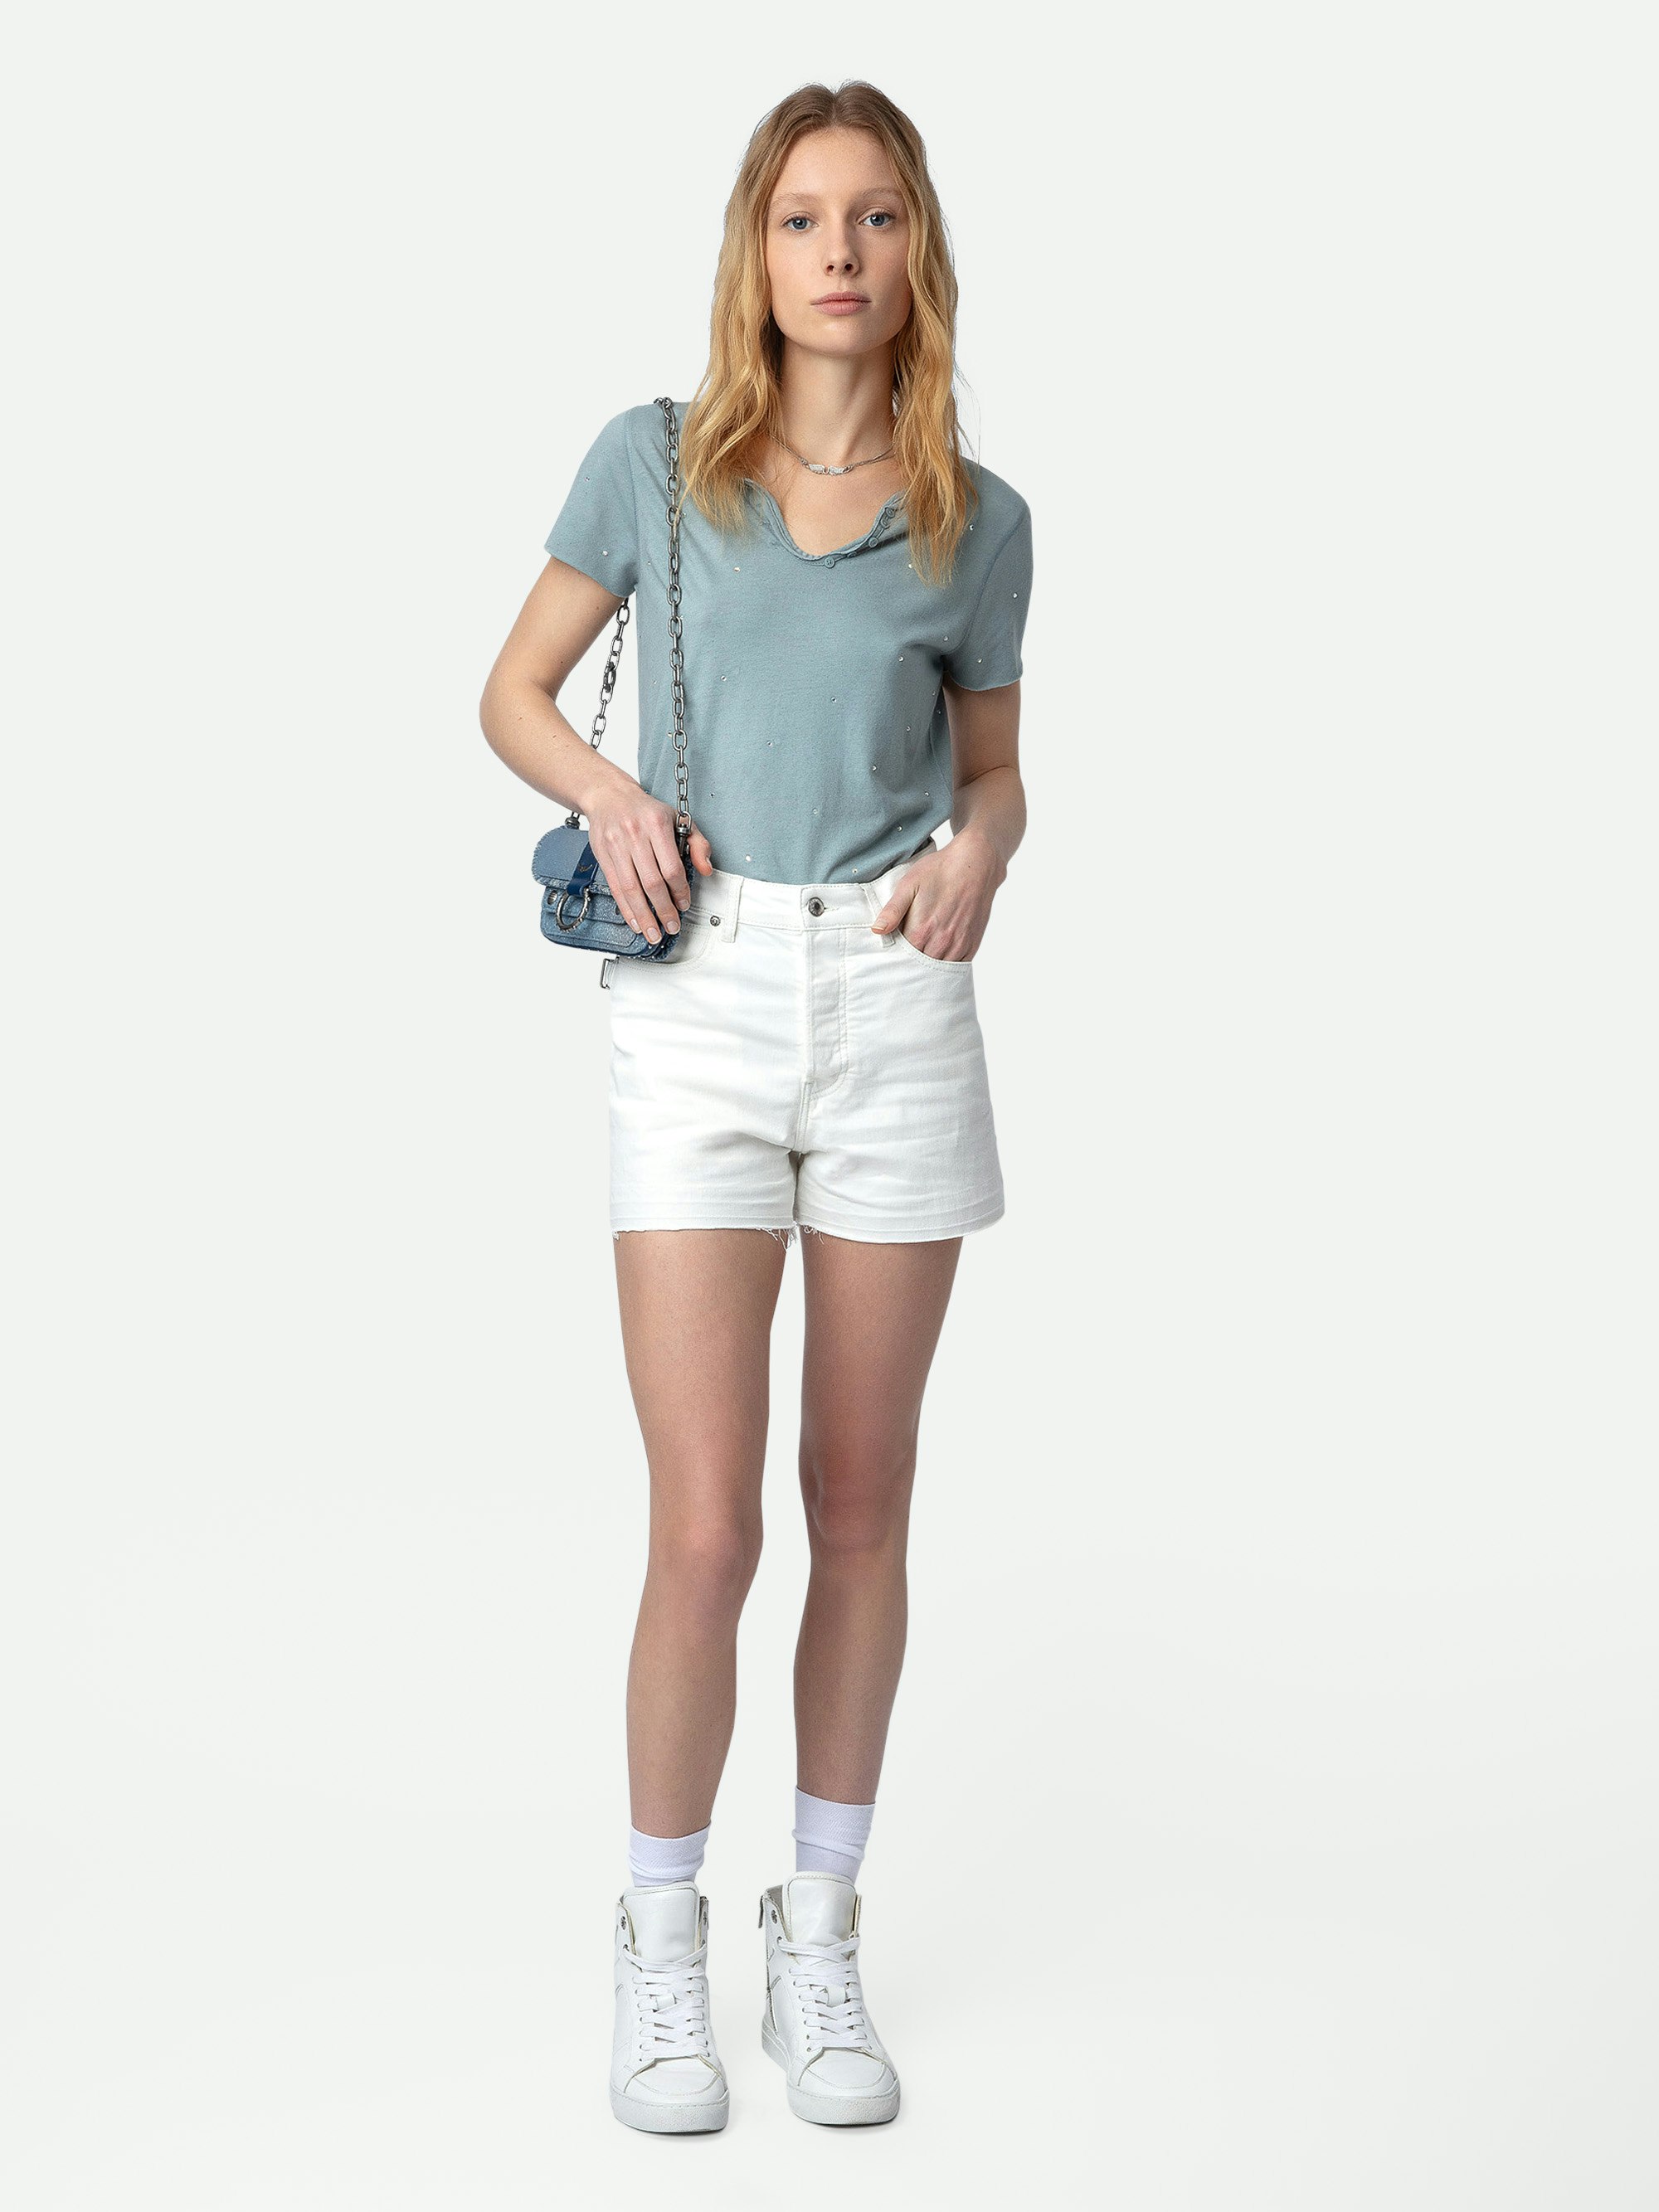 Shorts Sissi Denim - Weiße Shorts aus Denim mit Taschen, aufgesteppten Details und unversäuberten Kanten.